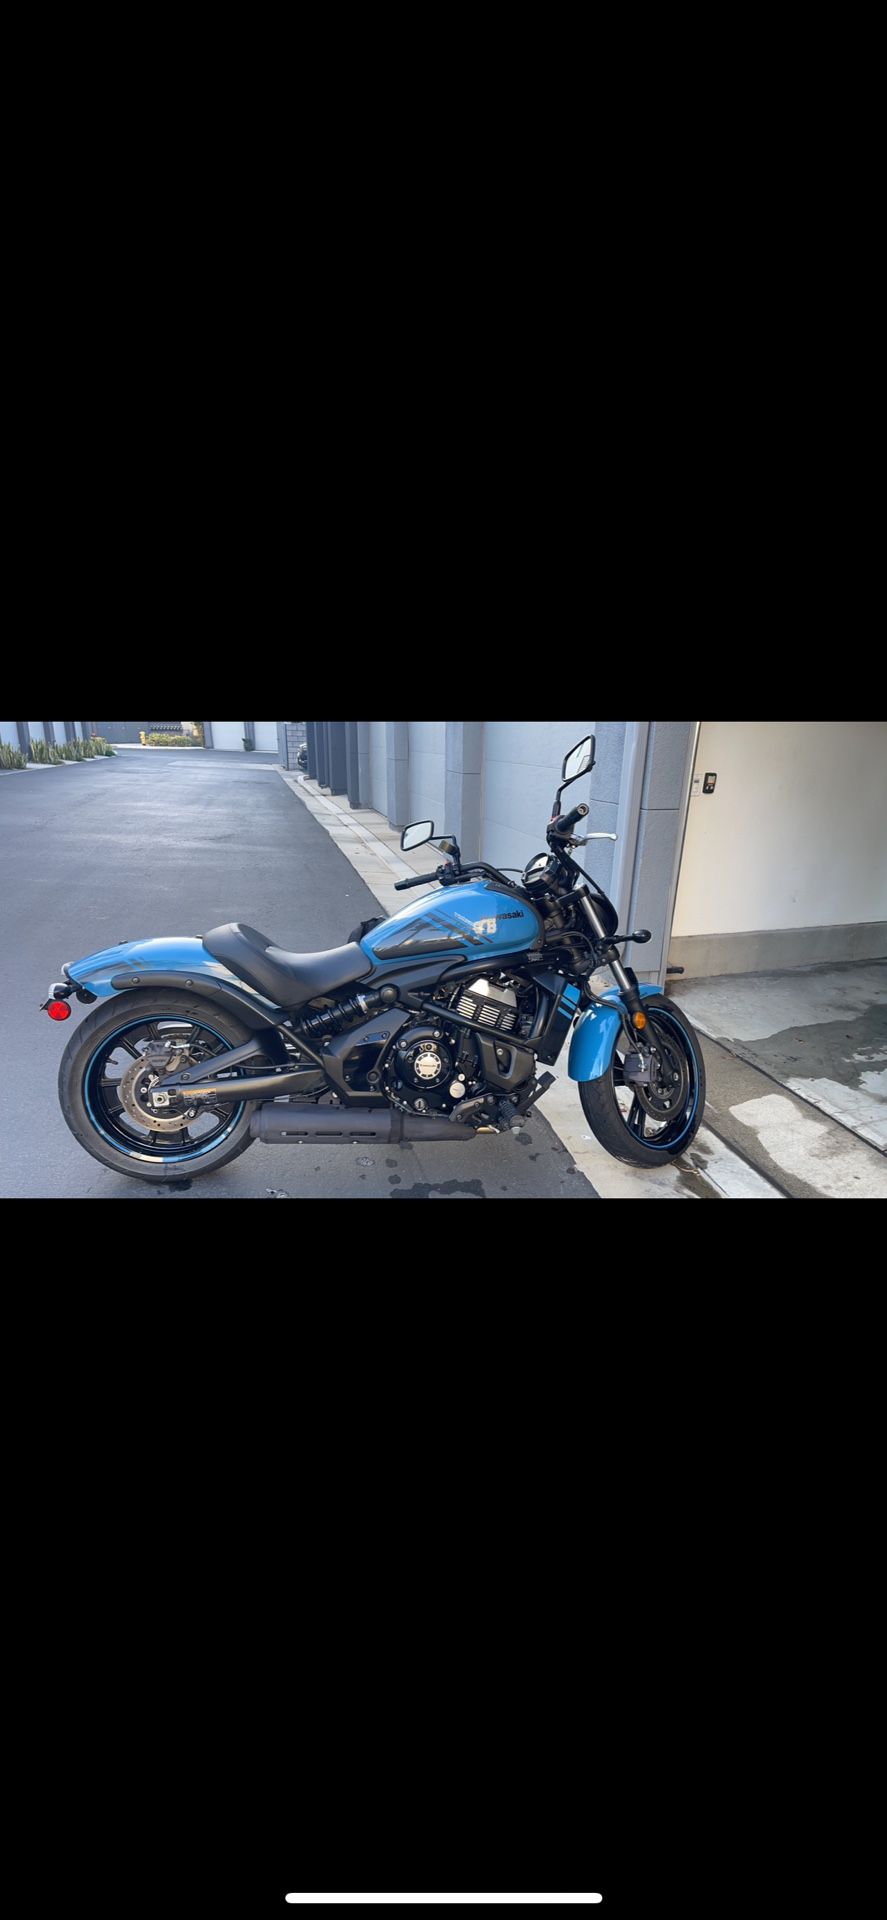 2019 Kawasaki Vulcan 650cc